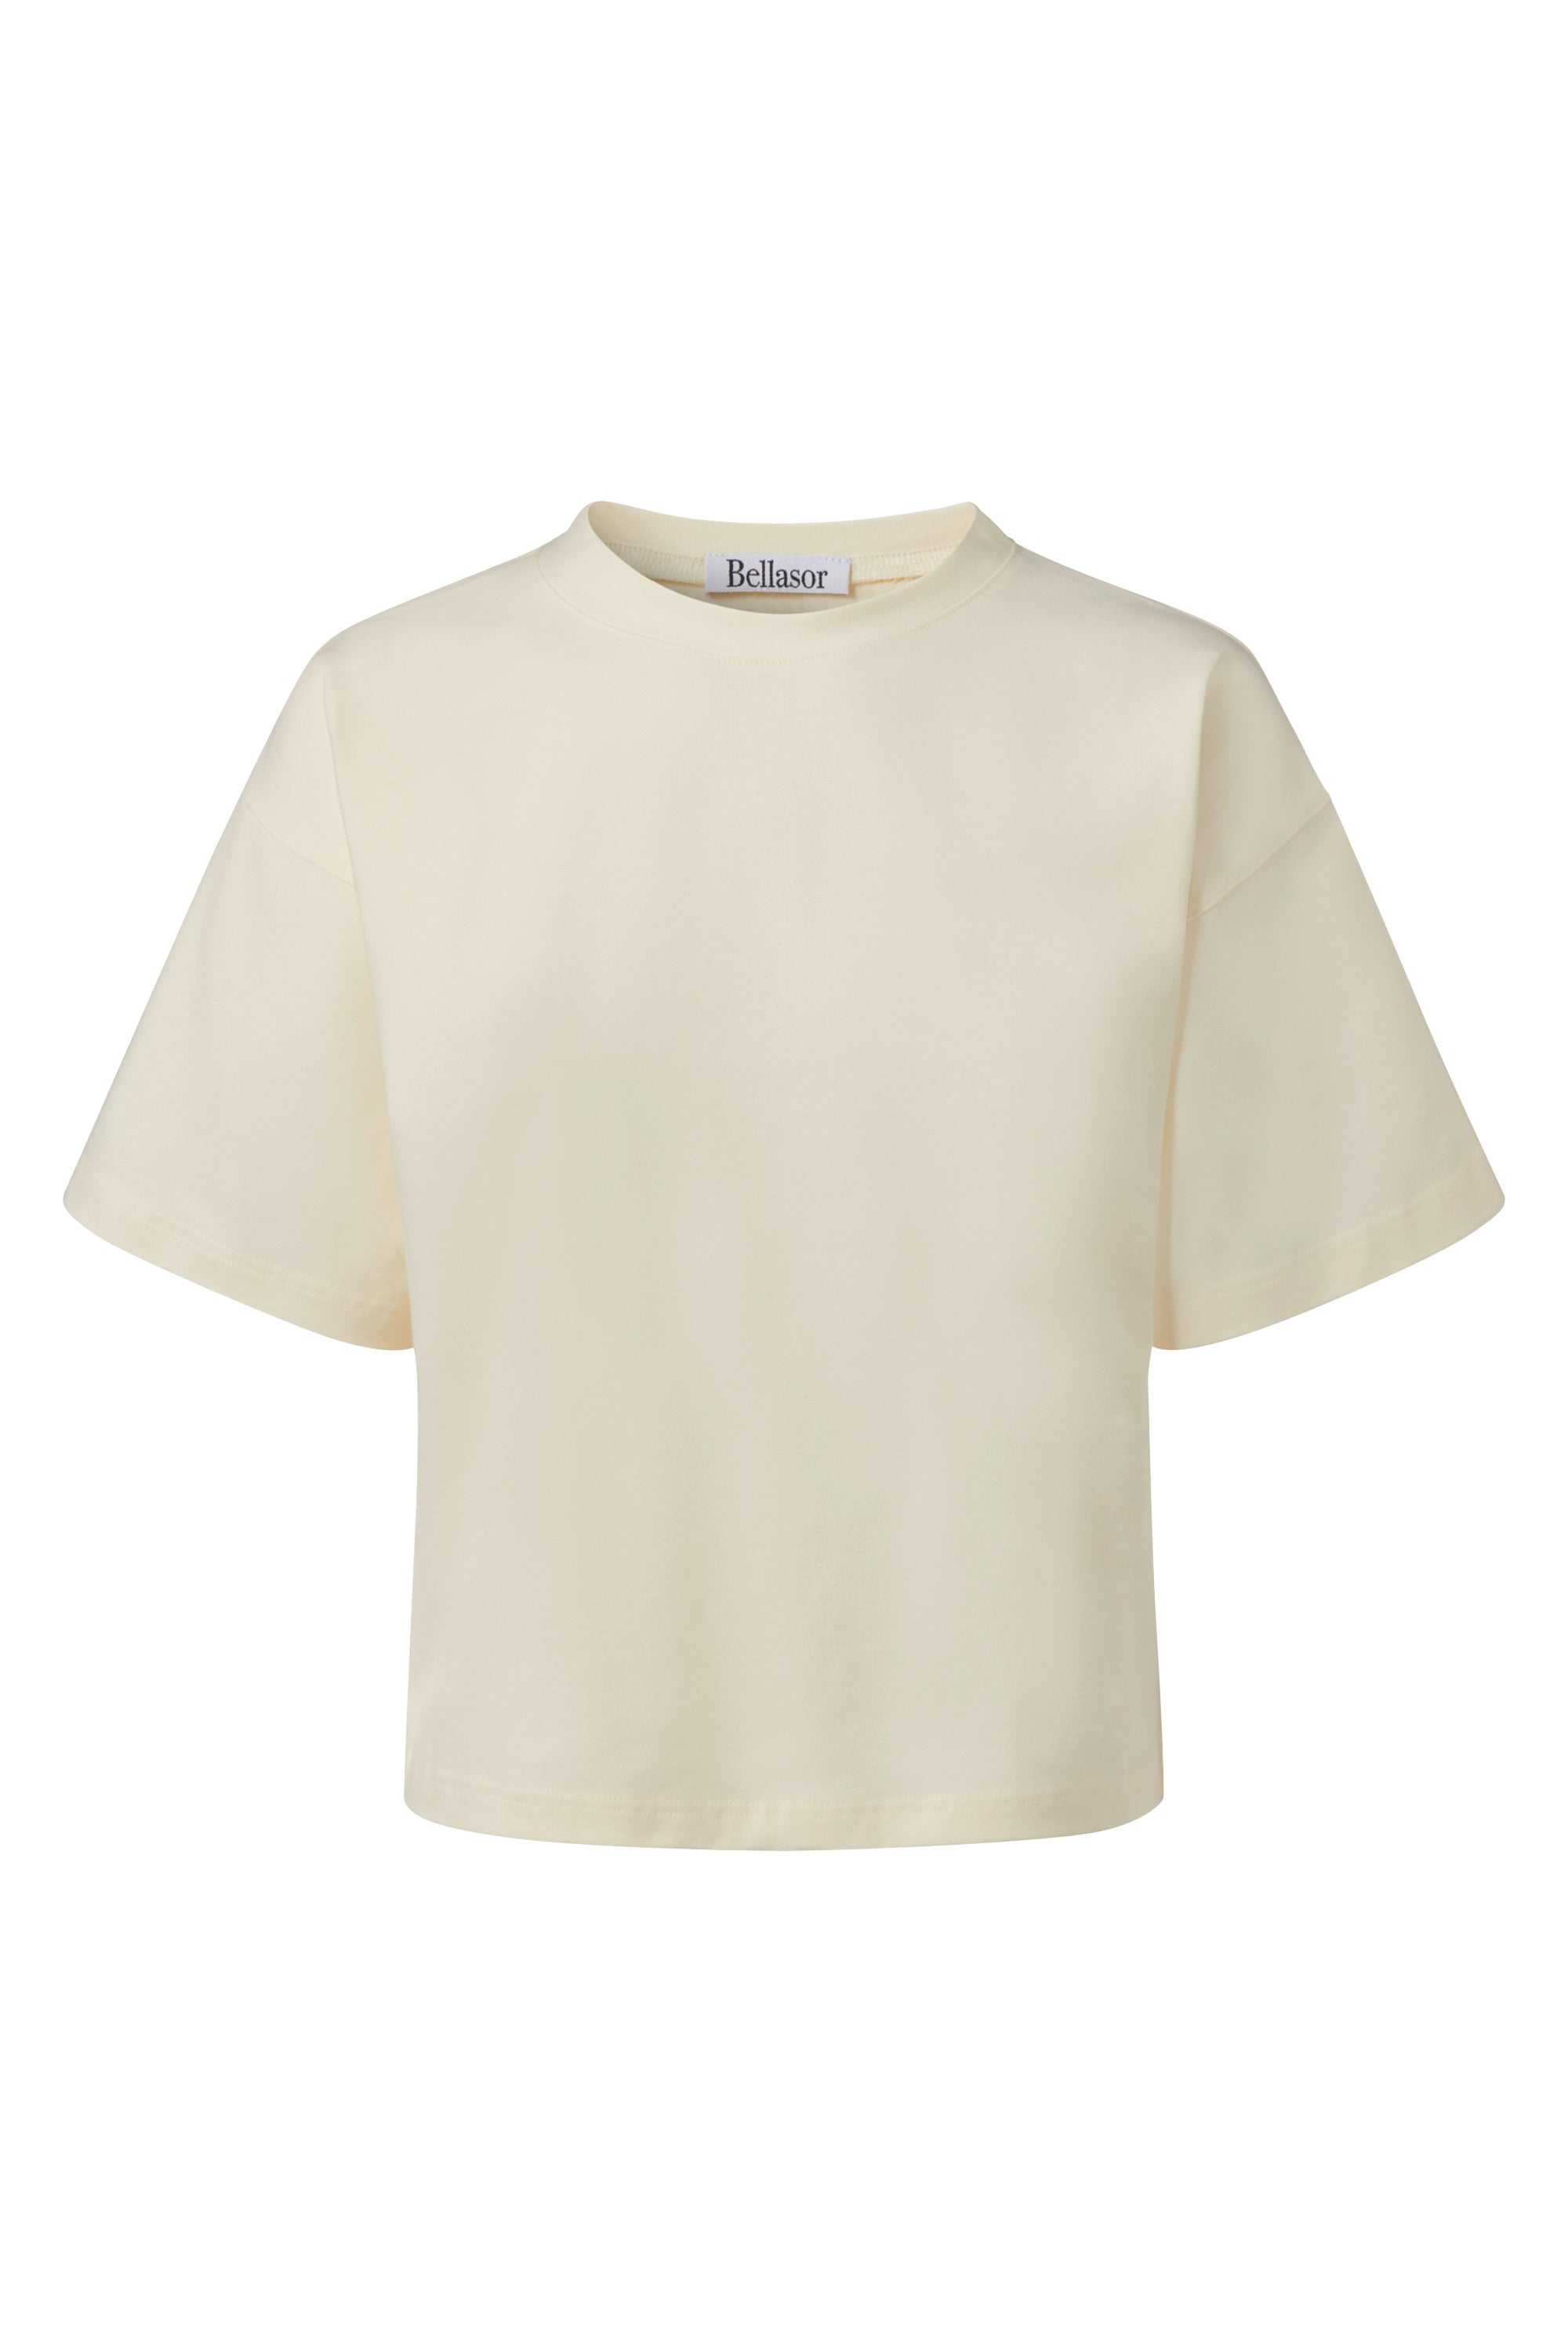 T-Shirt aus Bio-Baumwolle in der Farbe cremeweiss auf weißem Hintergrund.